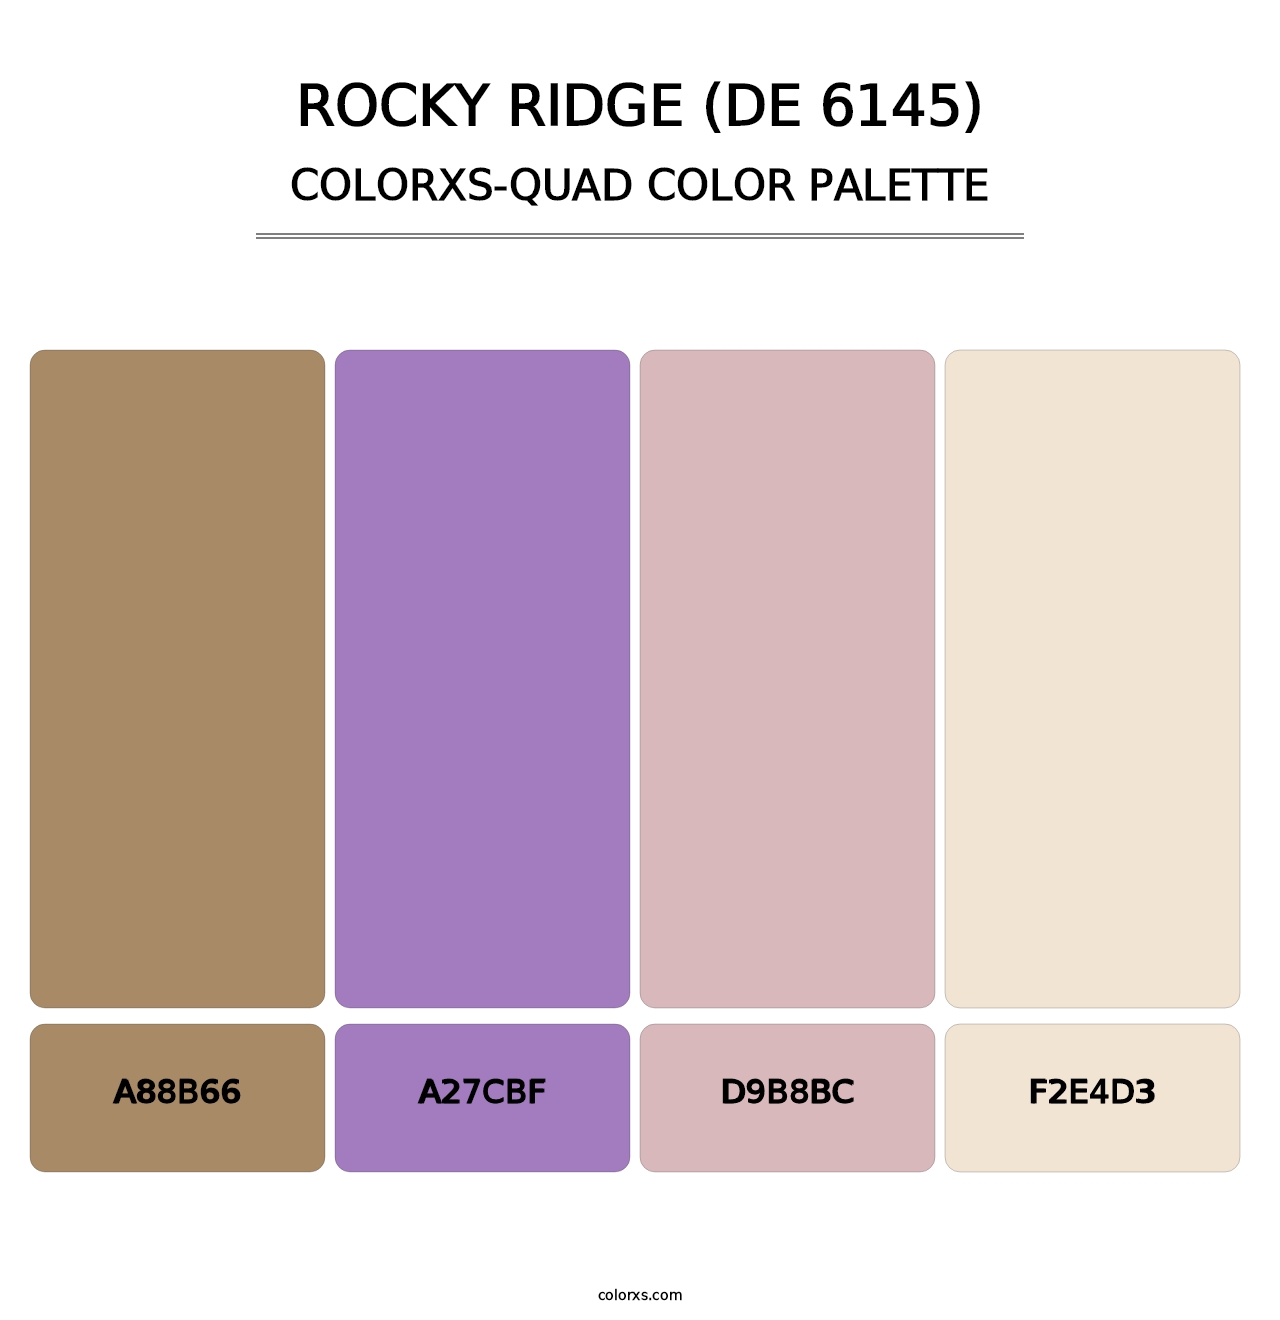 Rocky Ridge (DE 6145) - Colorxs Quad Palette